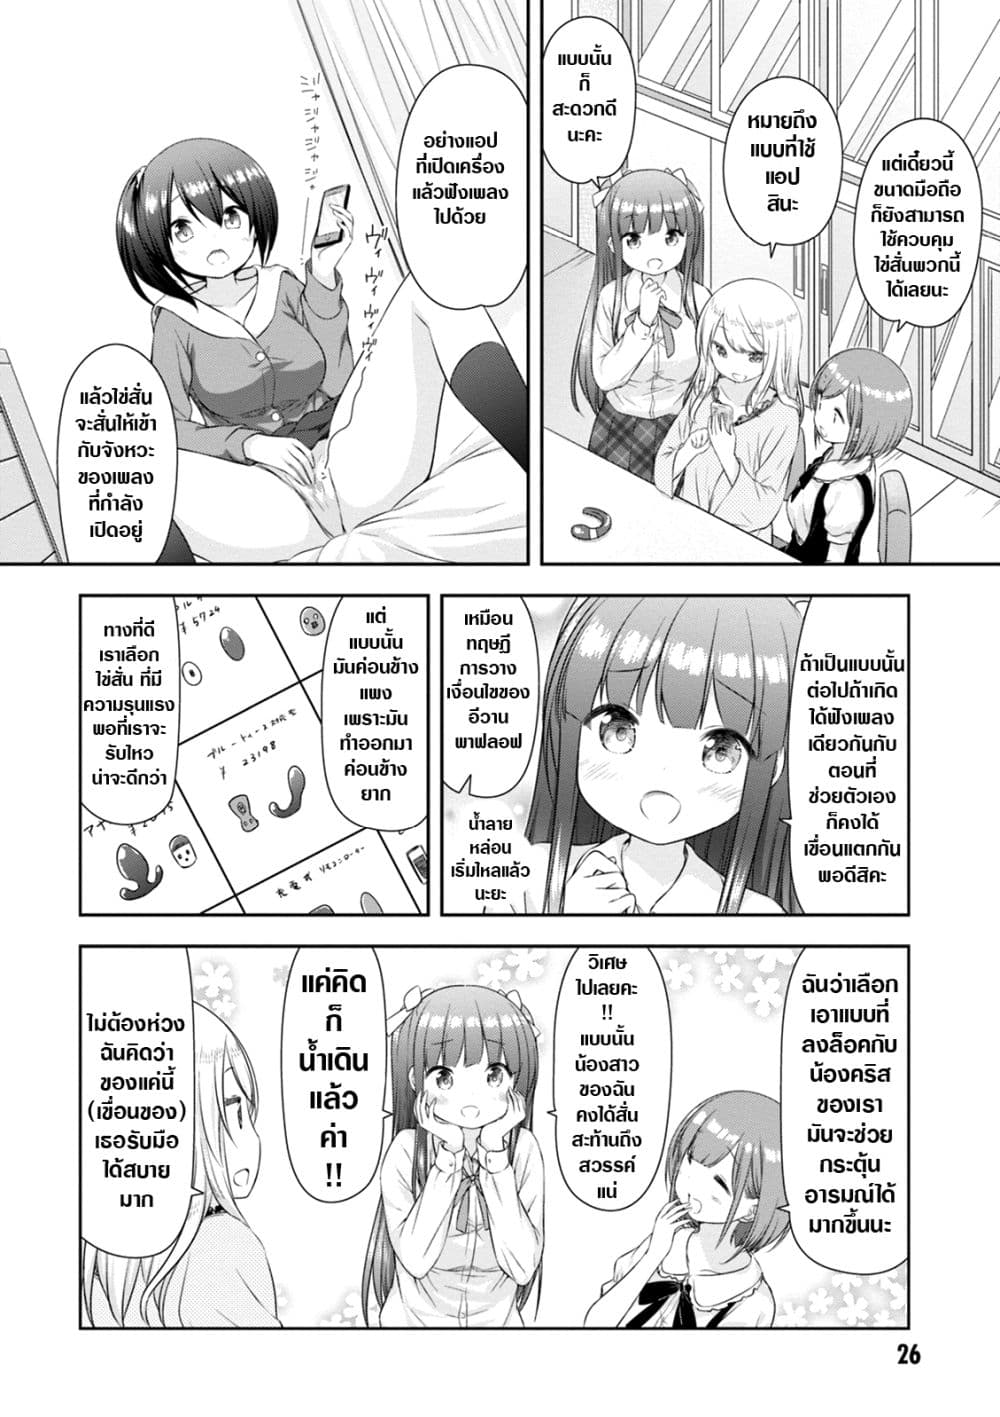 A Girl Meets Sex Toys: Akane Oguri Indulge In Onanism 2-2